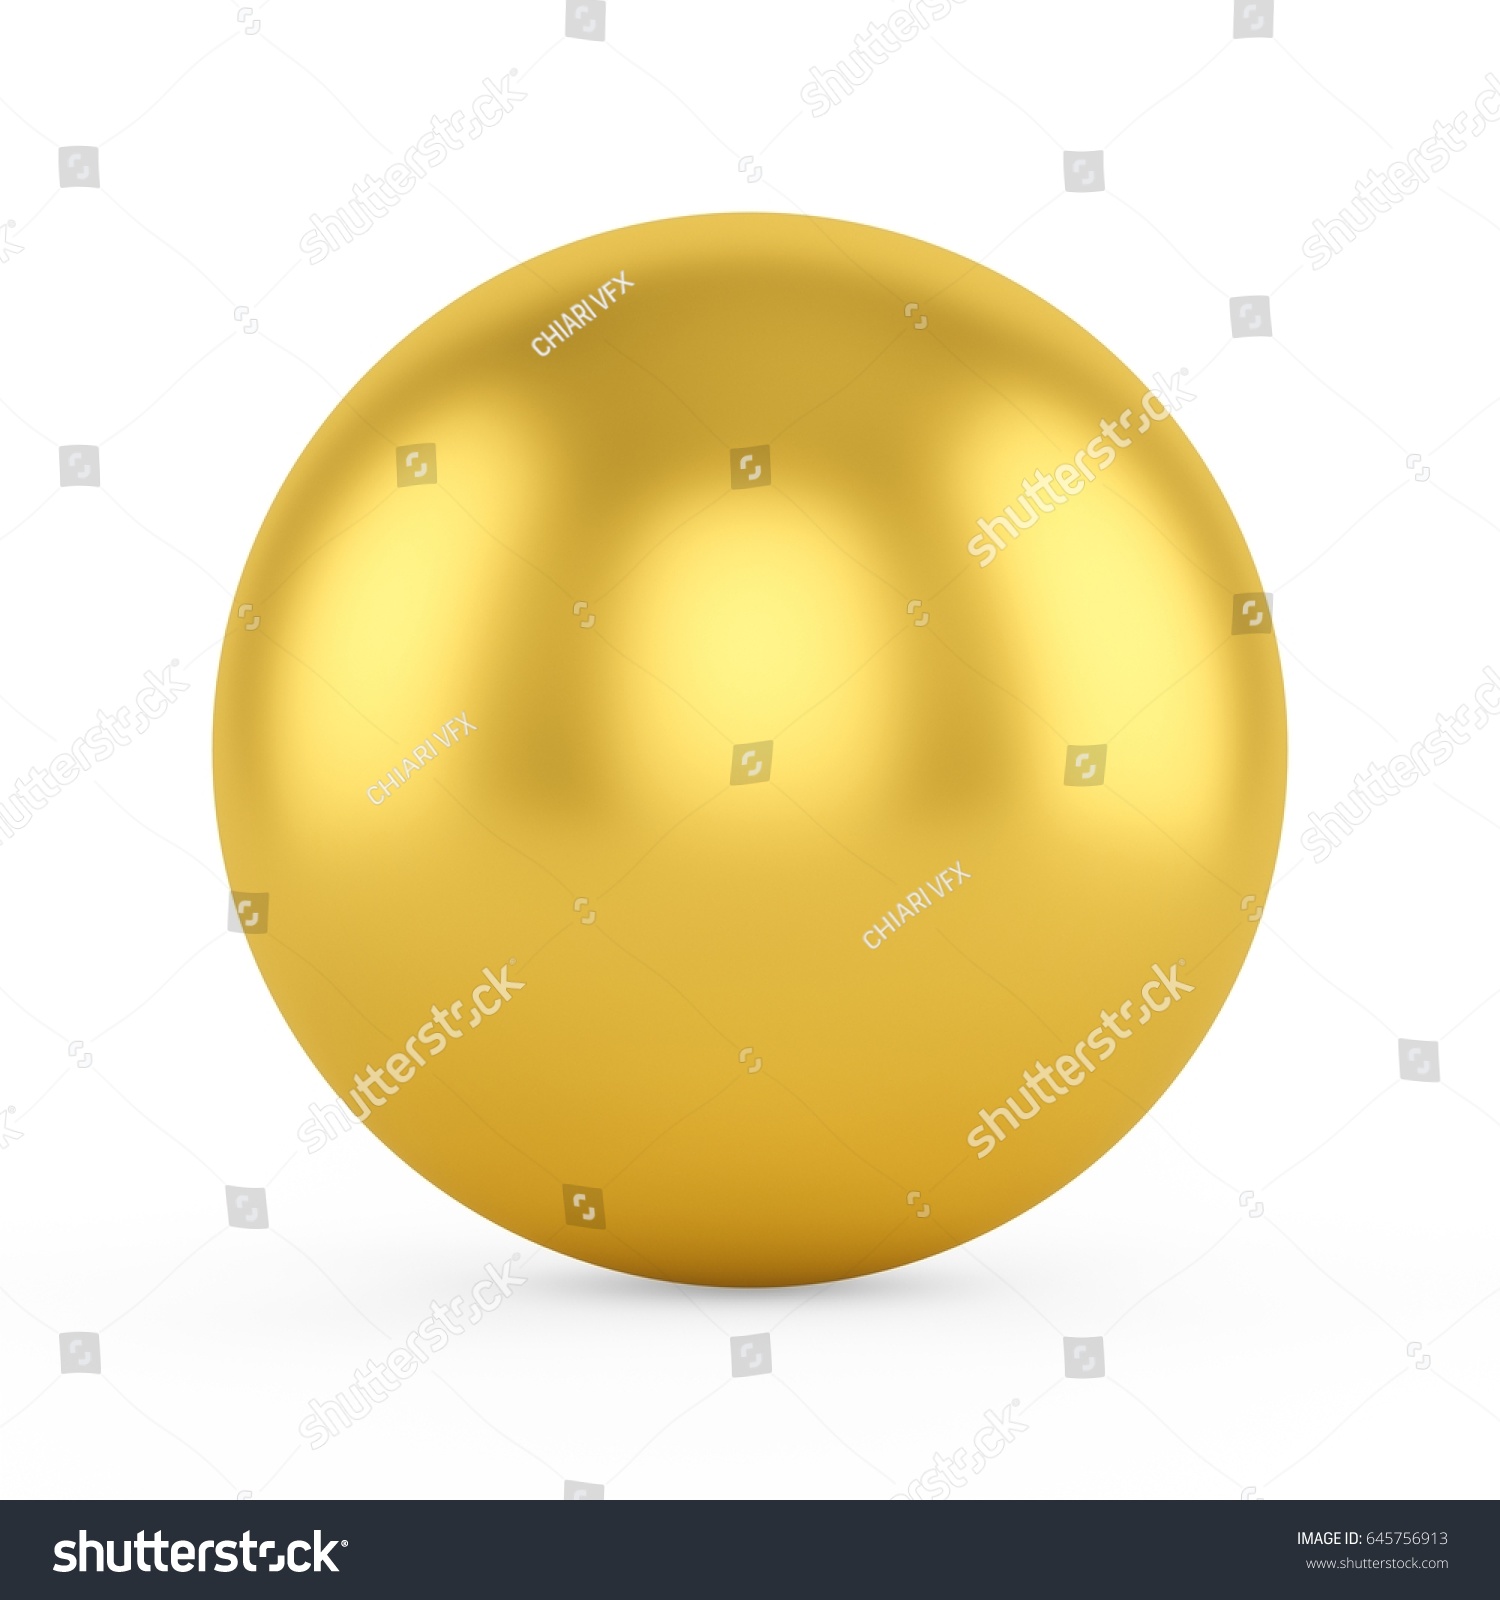 3d Golden Sphere On White Background Stock Illustration 645756913 ...